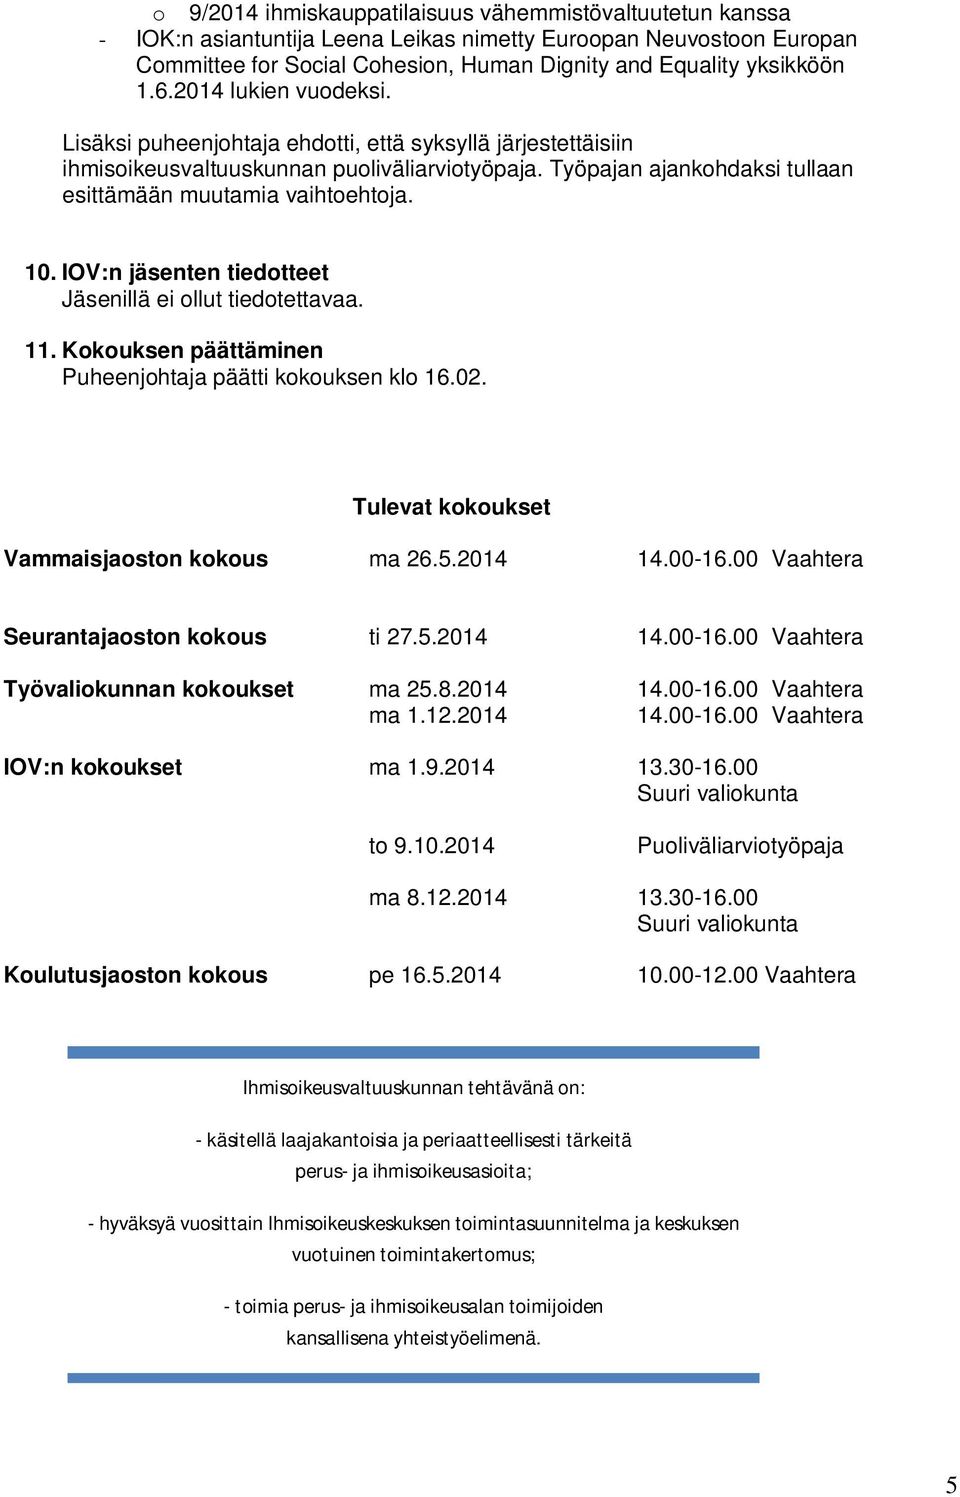 10. IOV:n jäsenten tiedotteet Jäsenillä ei ollut tiedotettavaa. 11. Kokouksen päättäminen Puheenjohtaja päätti kokouksen klo 16.02. Tulevat kokoukset Vammaisjaoston kokous ma 26.5.2014 14.00-16.